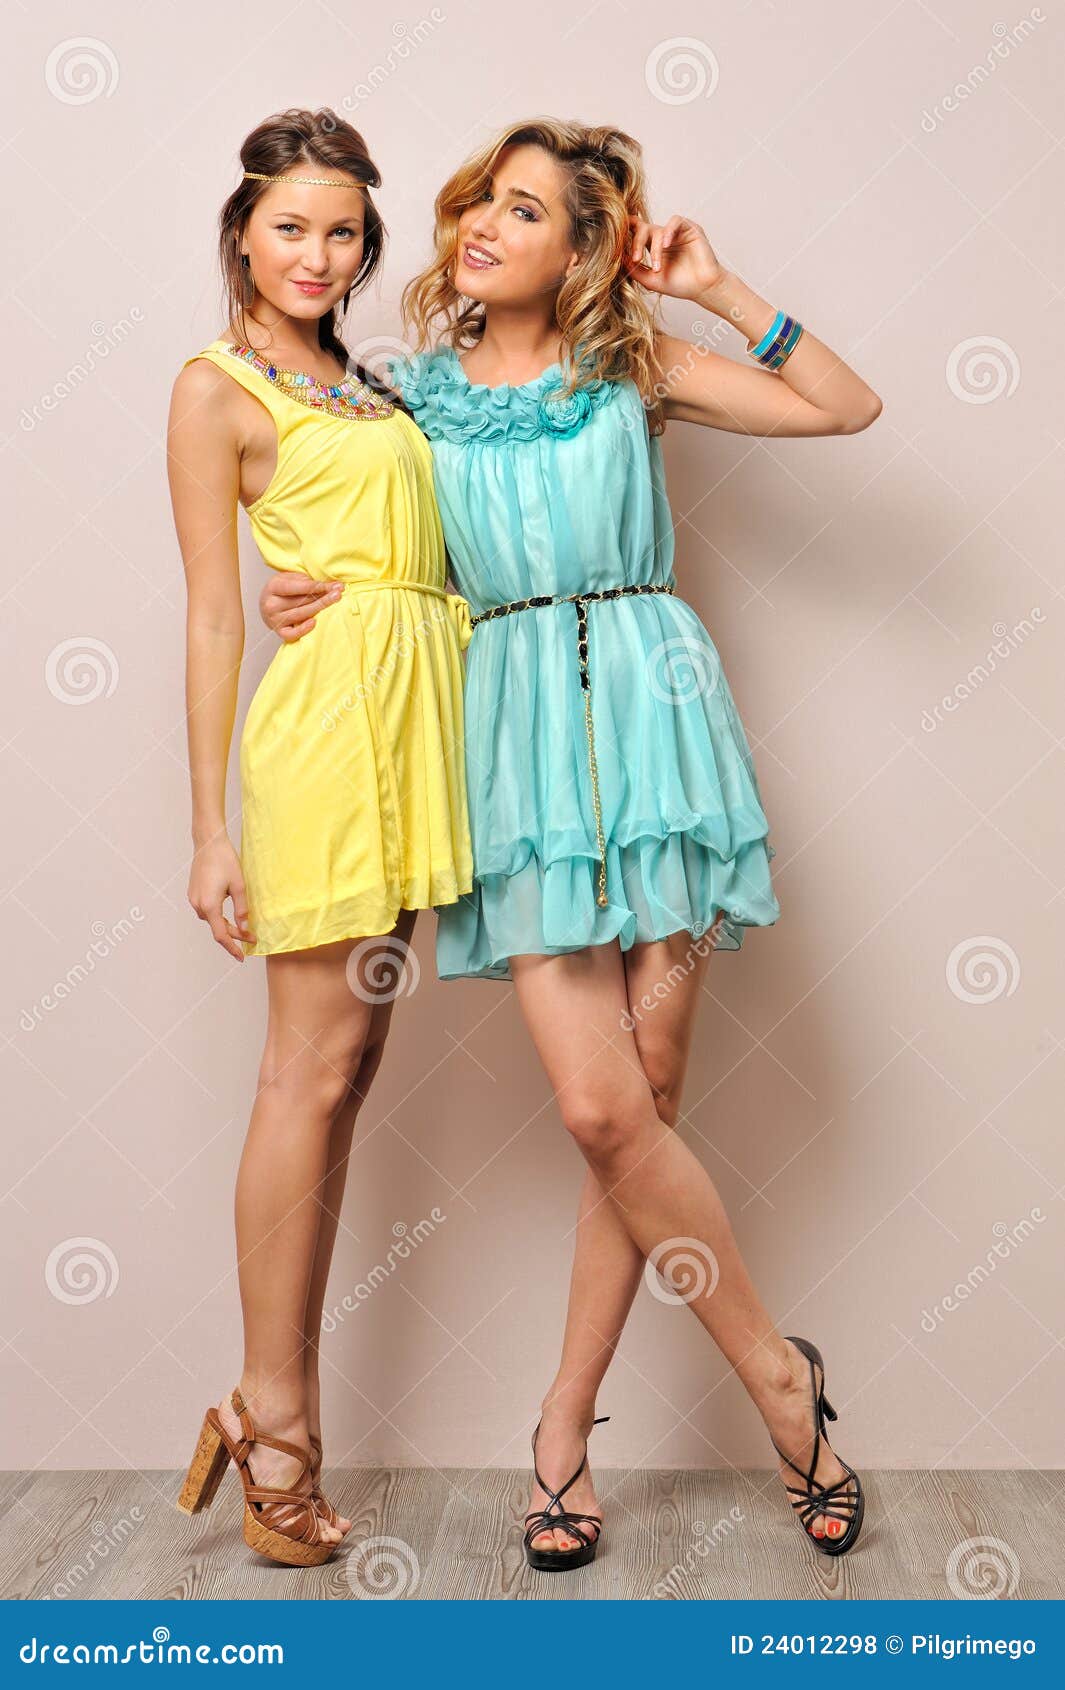 women in pretty dresses